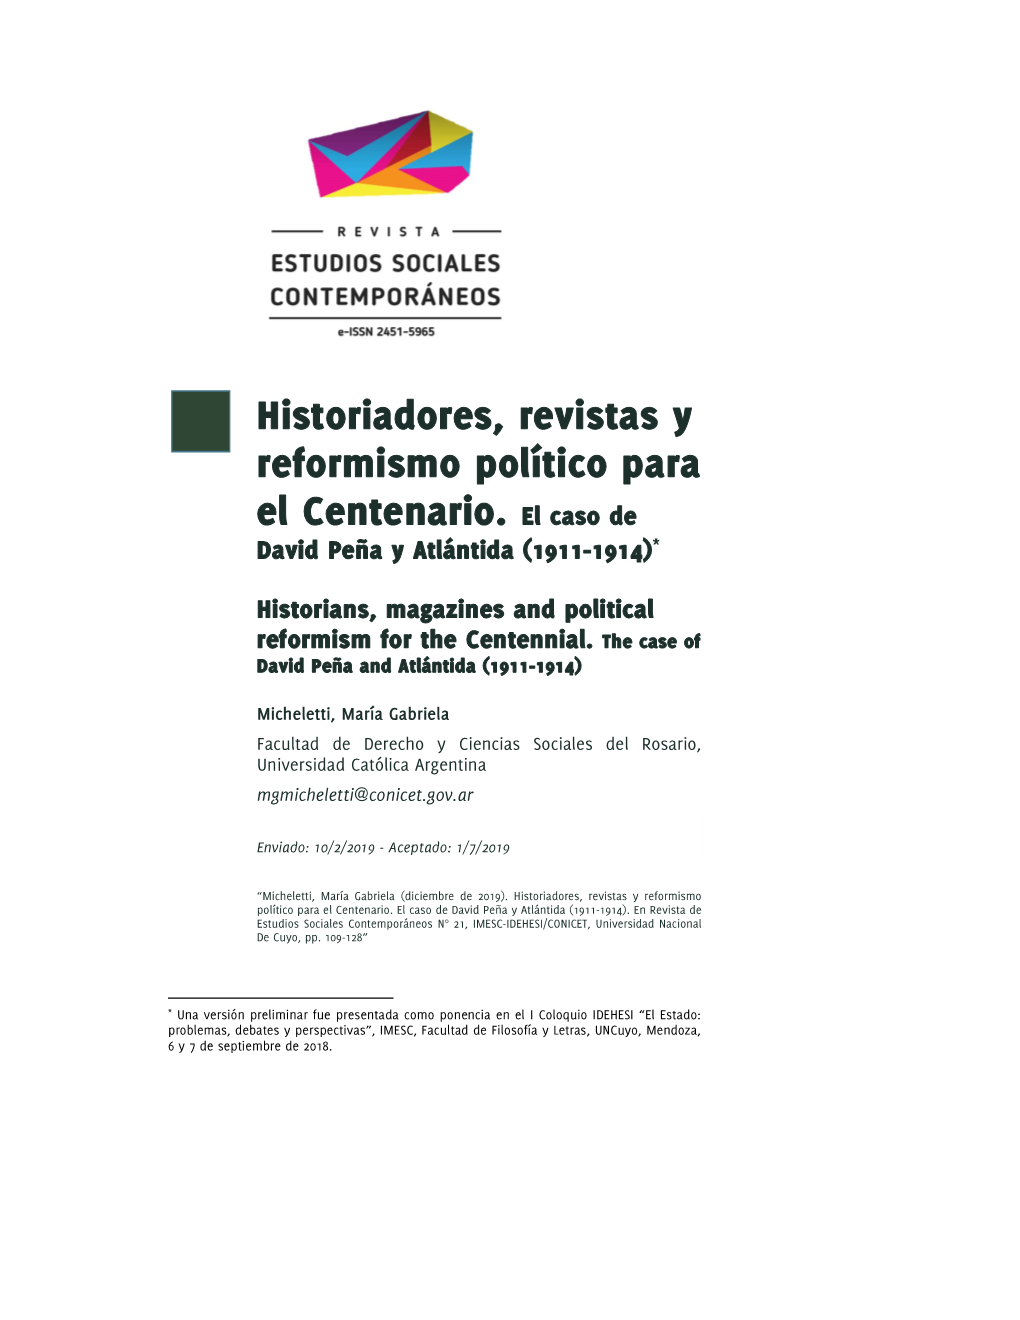 Historiadores, Revistas Y Reformismo Político Para El Centenario. El Caso De David Peña Y Atlántida (1911-1914)*